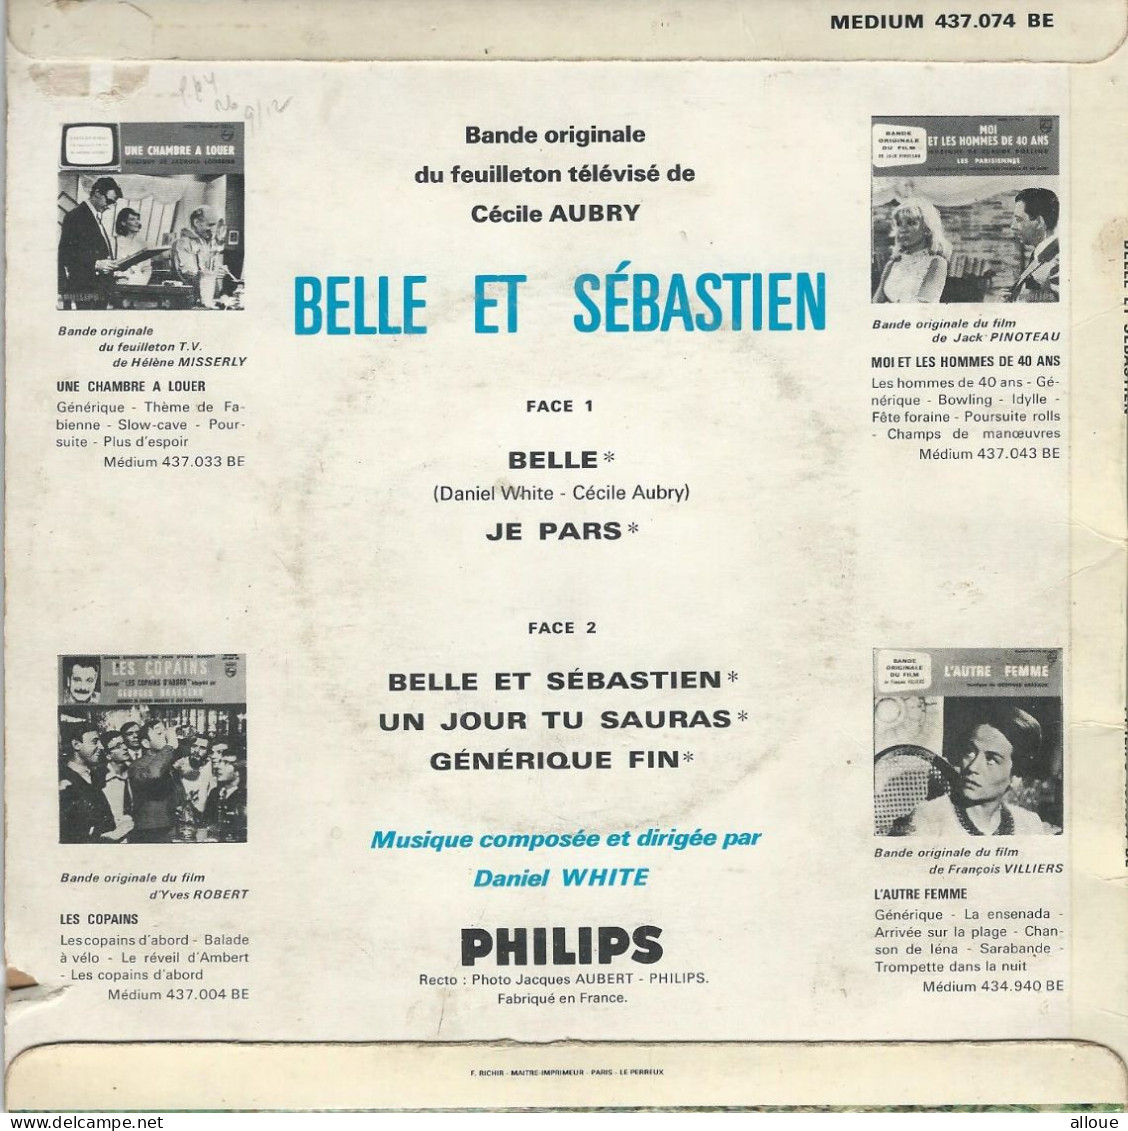 BELLE ET SEBASTIEN - FR EP - BELLE +4 BO DU FEUILLETON TELEVISE DE CECILE AUBRY - Soundtracks, Film Music